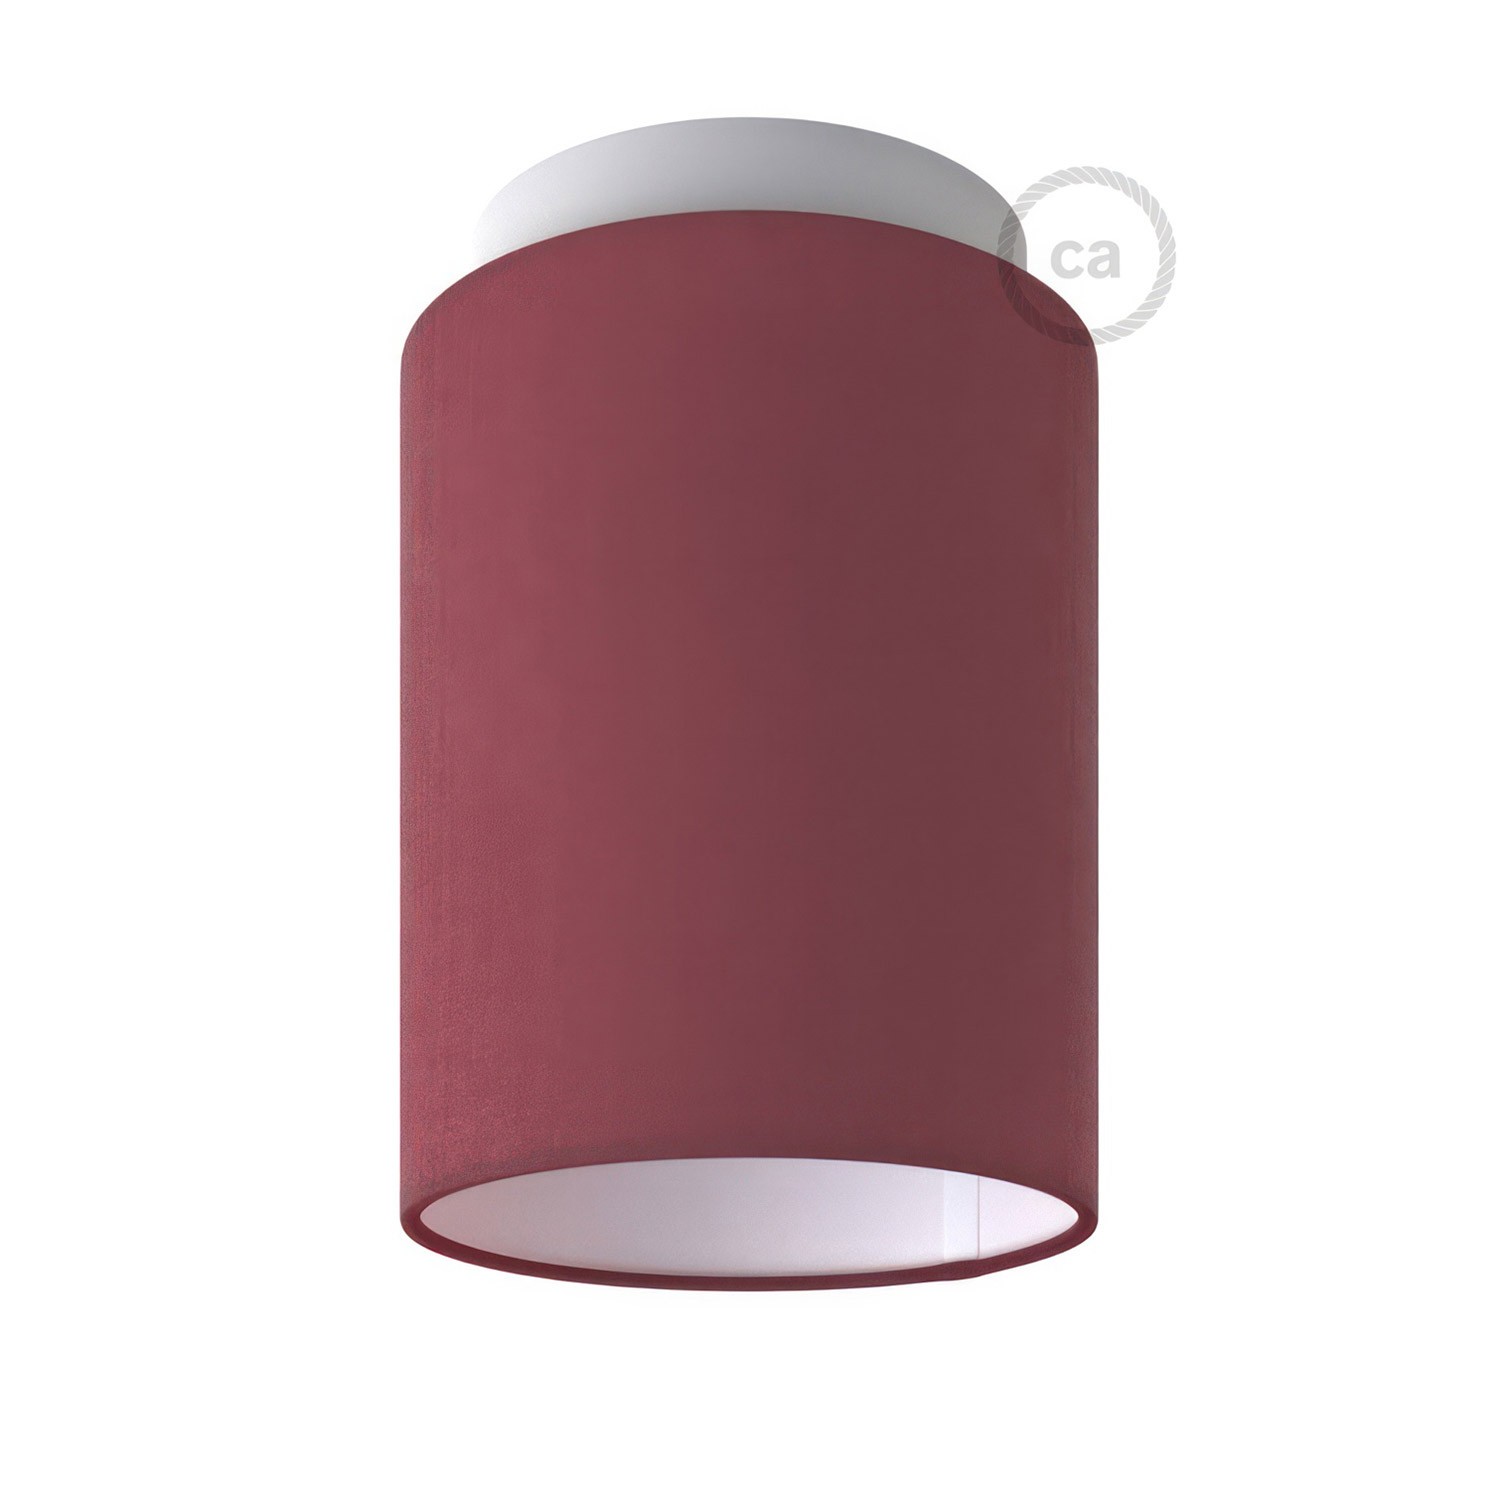 Fermaluce Color cu abajur cilindric, Ø 15cm înălțime 18cm, lustră metalică de perete sau tavan.